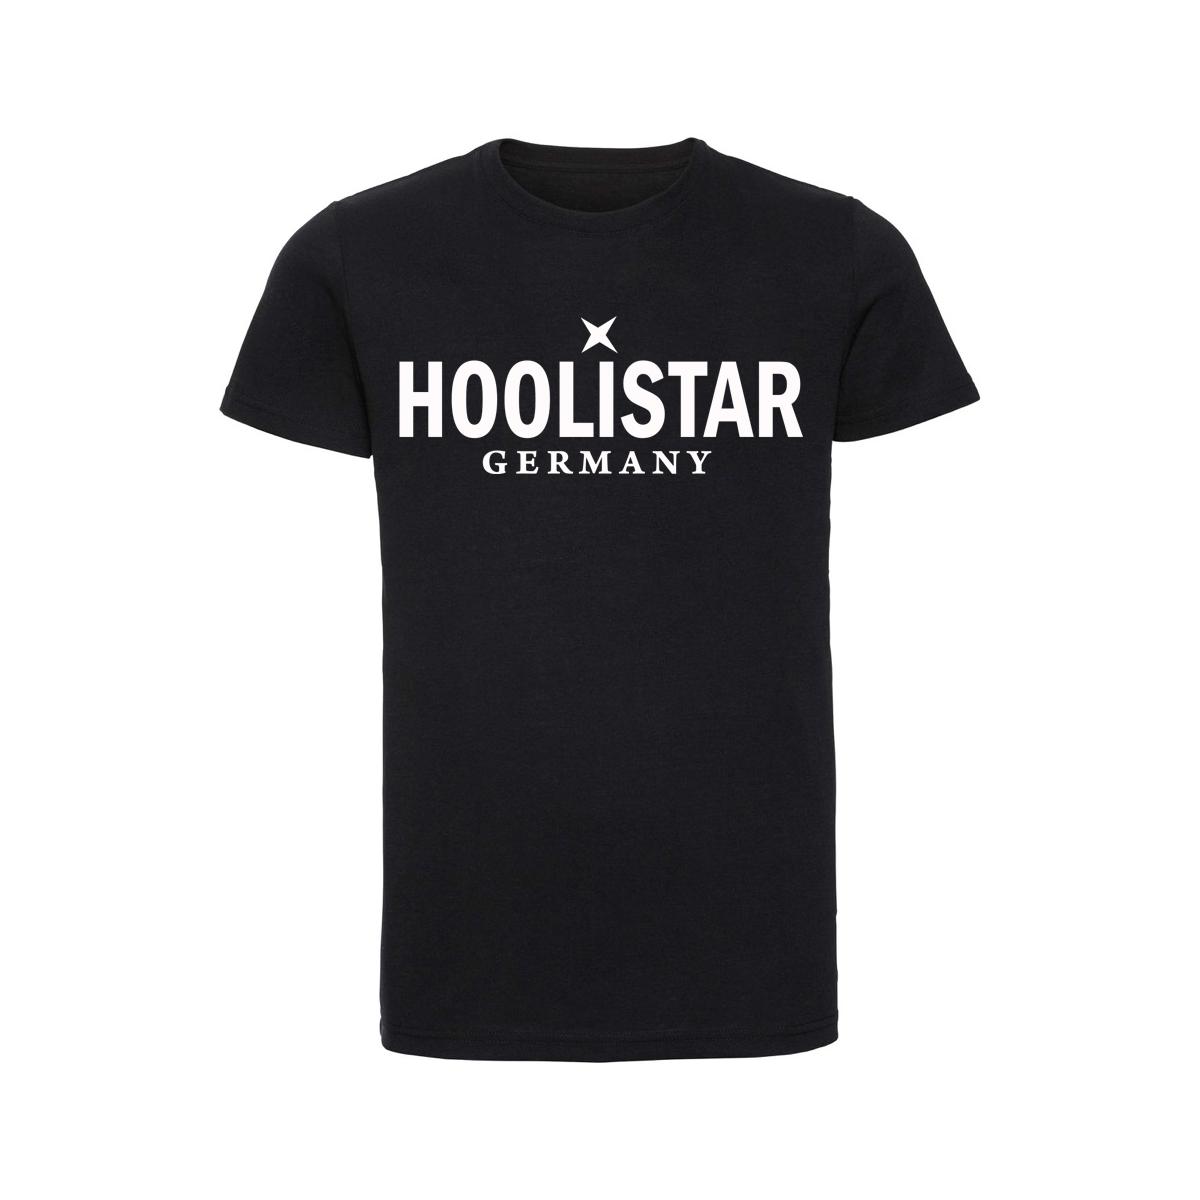 X Hoolistar - Männer T-Shirt - schwarz